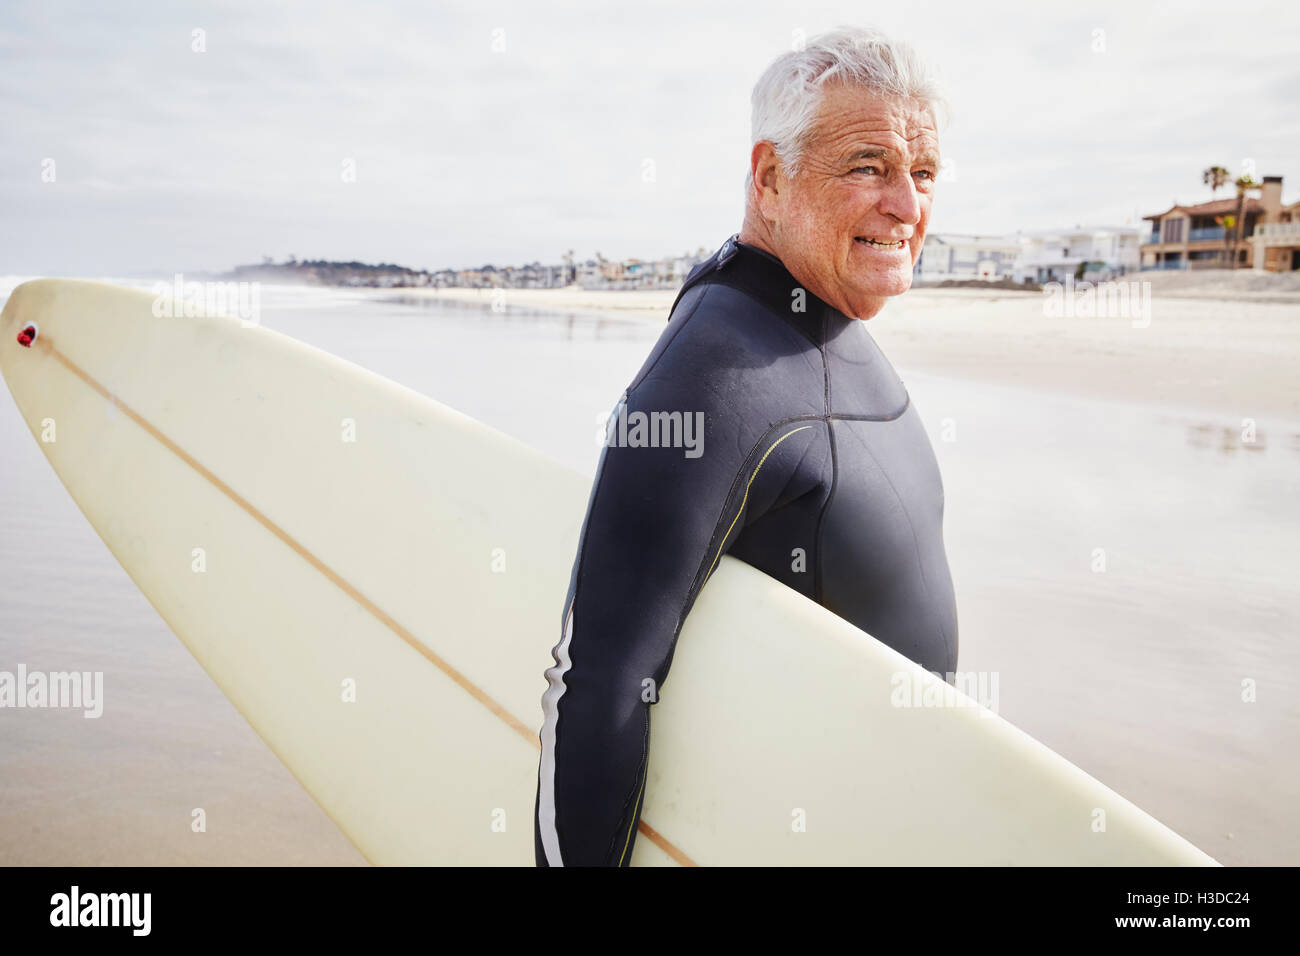 Smiling senior homme debout sur une plage, porter une combinaison isothermique et transporter une planche de surf. Banque D'Images